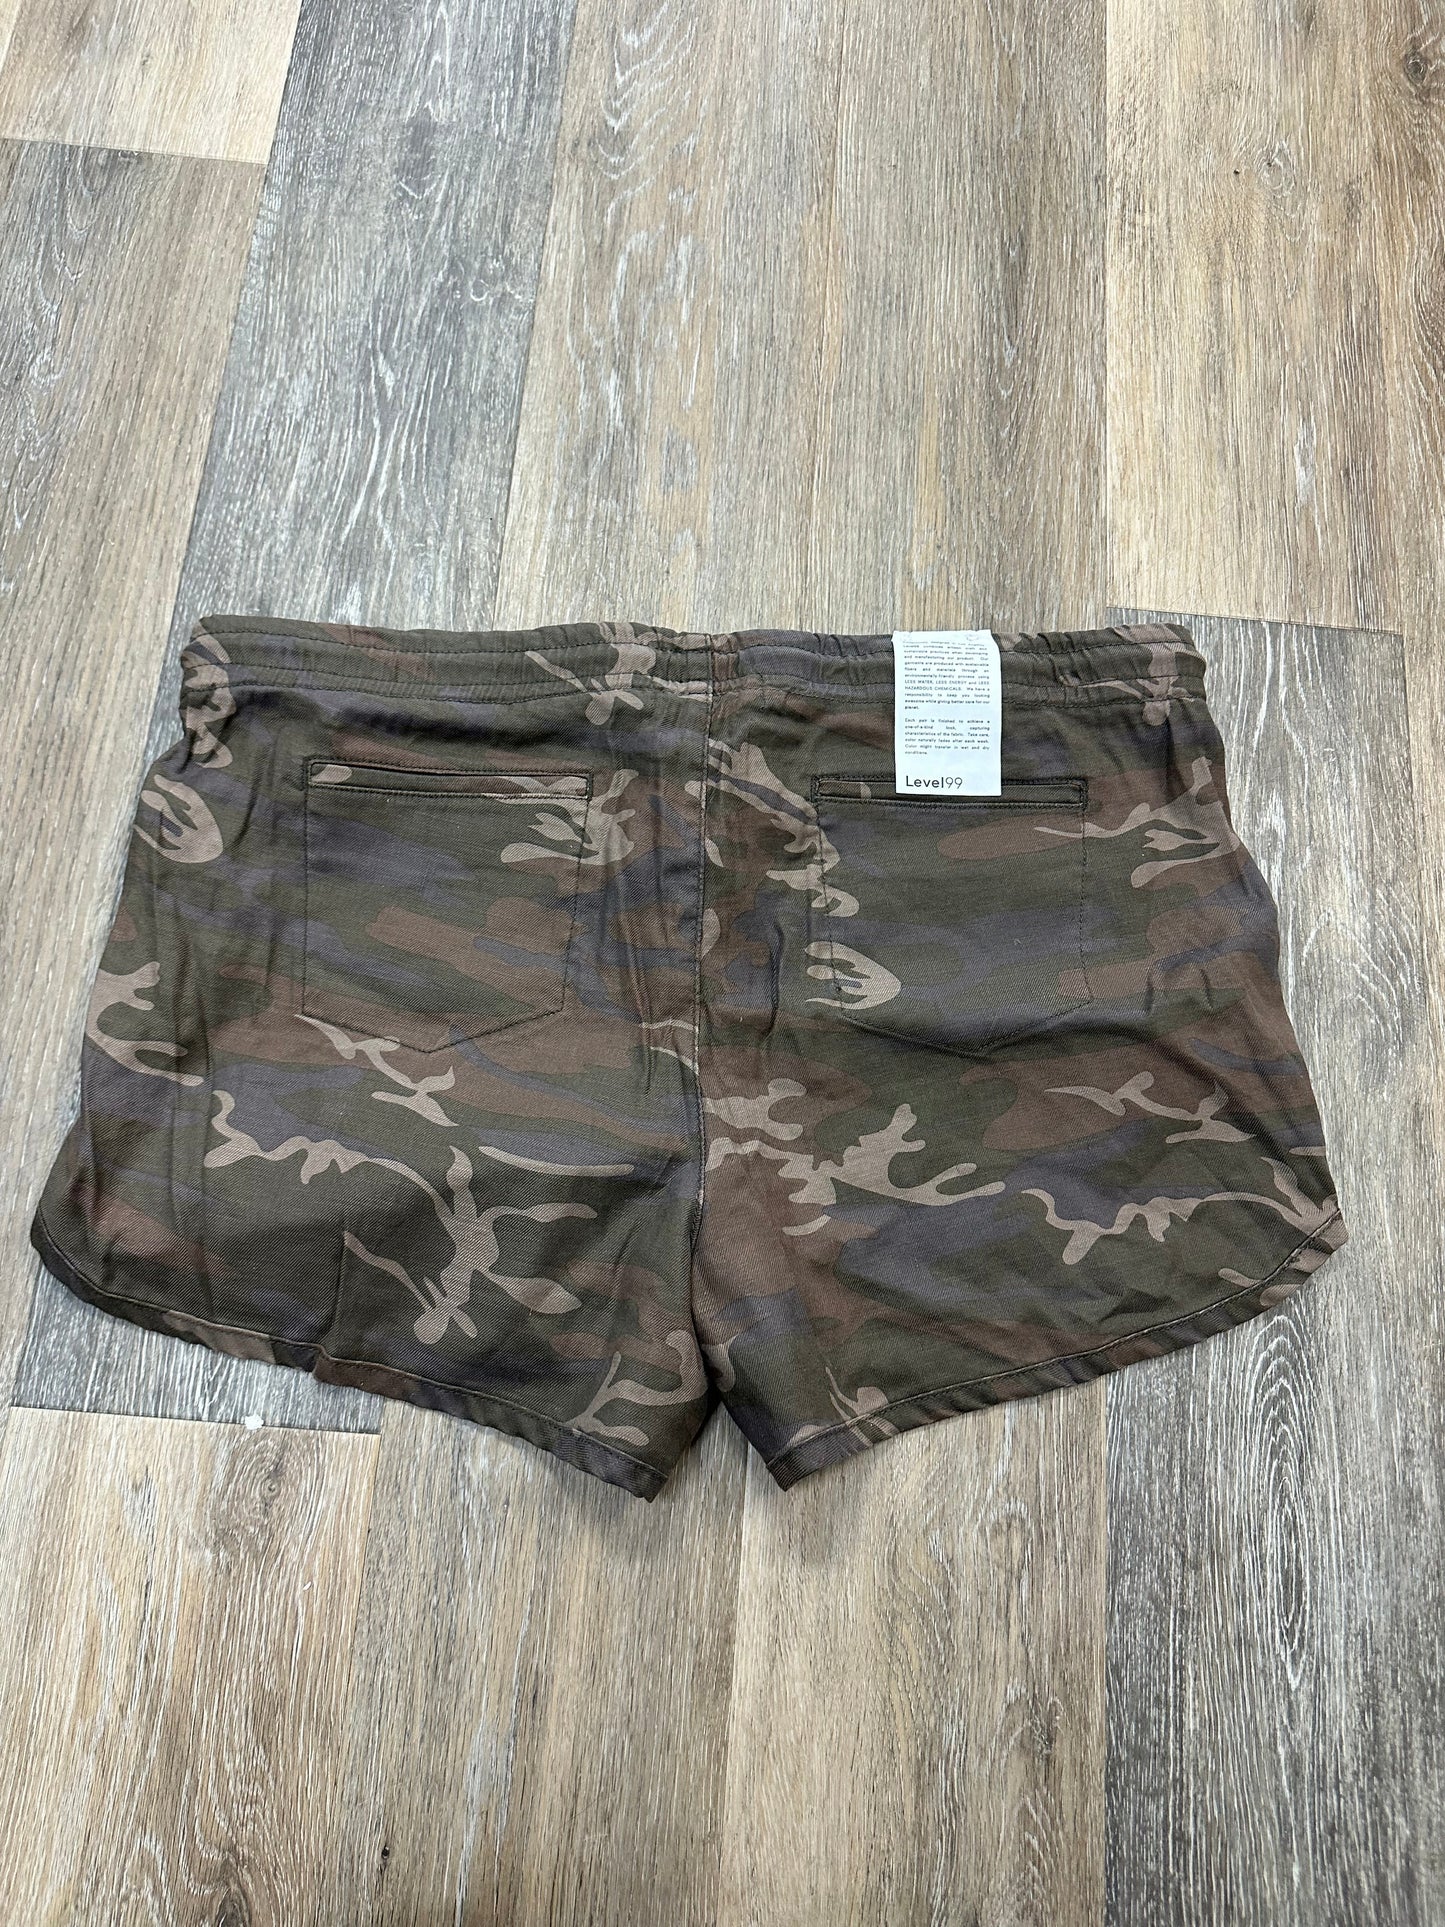 Camouflage Print Shorts Level 99, Size Xl